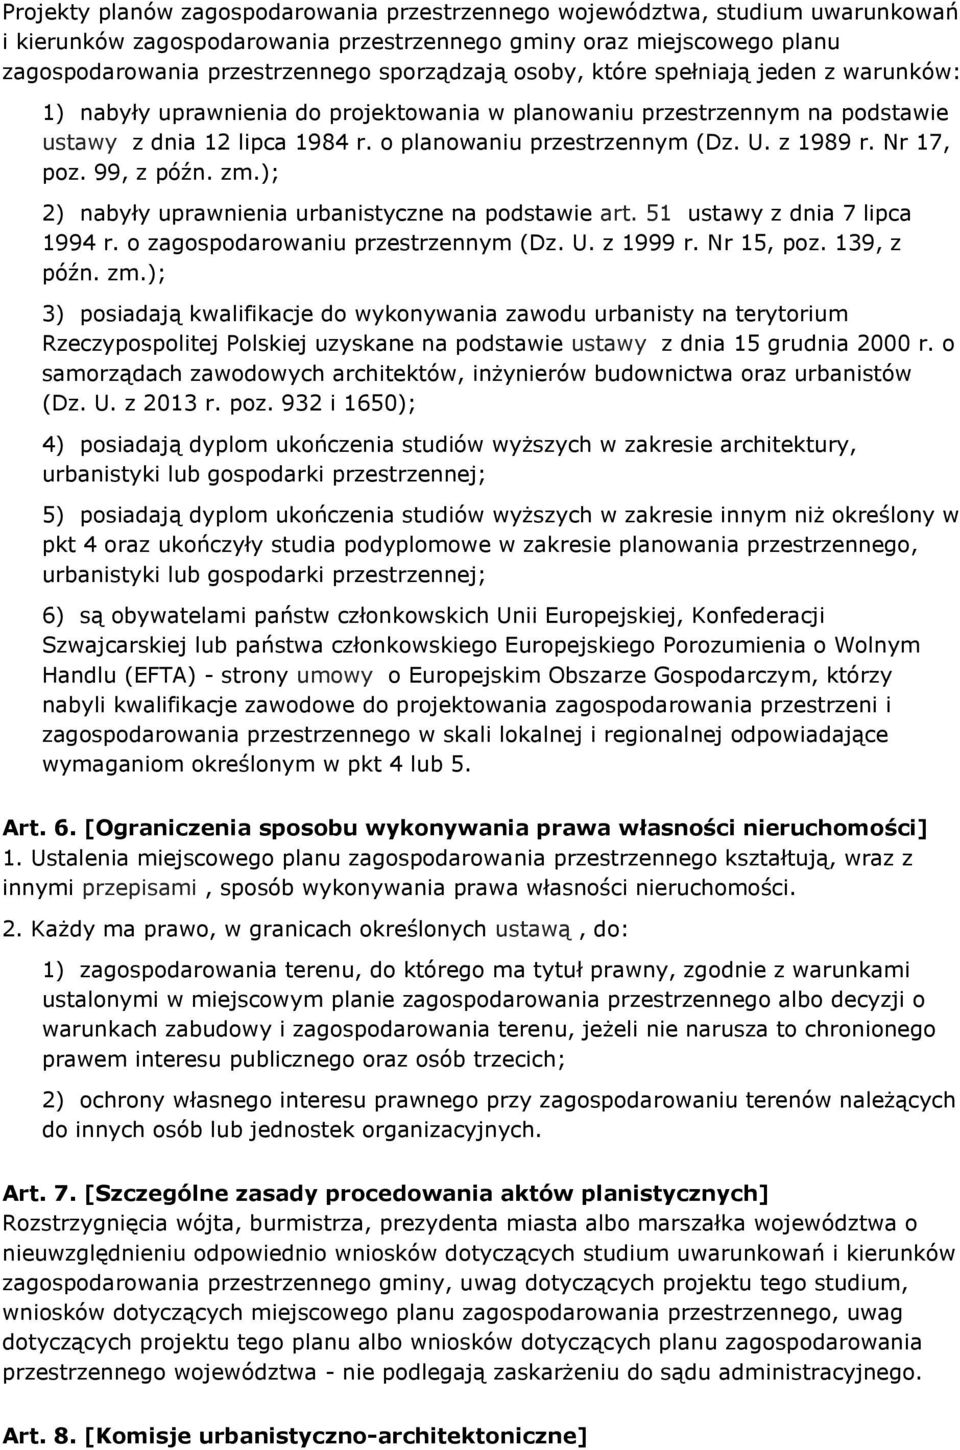 Nr 17, poz. 99, z późn. zm.); 2) nabyły uprawnienia urbanistyczne na podstawie art. 51 ustawy z dnia 7 lipca 1994 r. o zagospodarowaniu przestrzennym (Dz. U. z 1999 r. Nr 15, poz. 139, z późn. zm.); 3) posiadają kwalifikacje do wykonywania zawodu urbanisty na terytorium Rzeczypospolitej Polskiej uzyskane na podstawie ustawy z dnia 15 grudnia 2000 r.